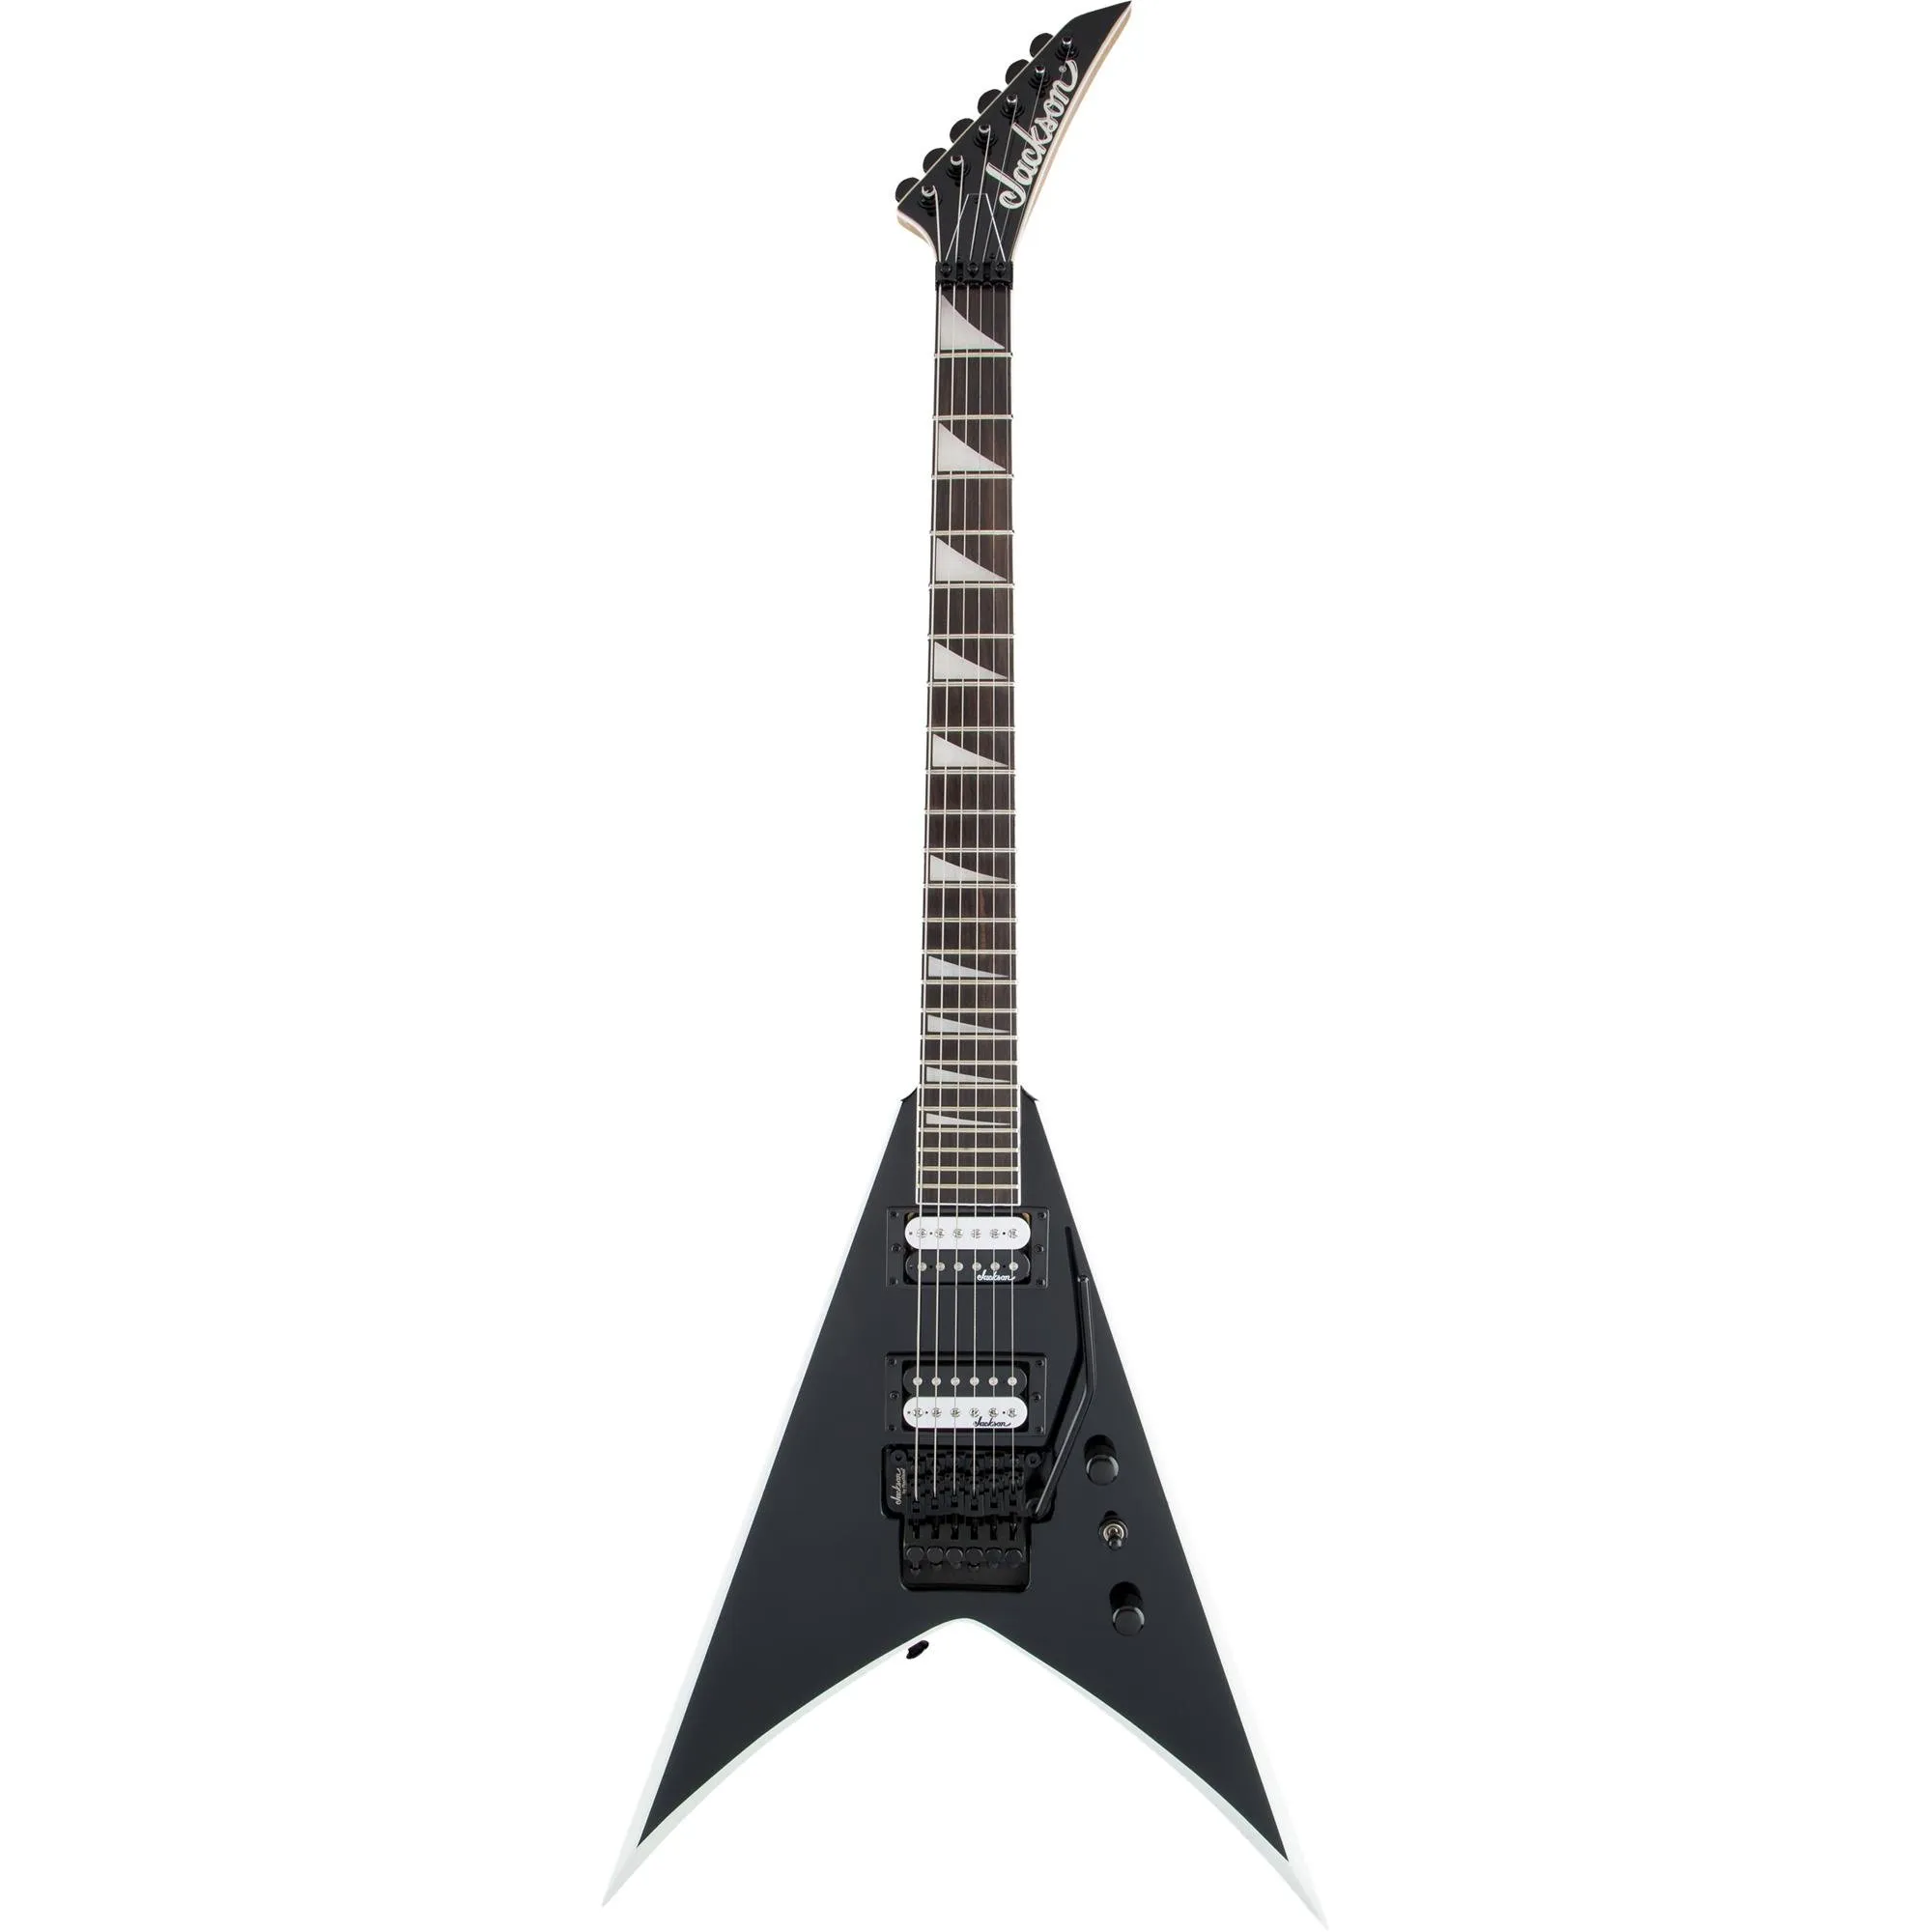 Guitarra Jackson King V JS32 Js Series Black with White Bevels por 4.257,99 à vista no boleto/pix ou parcele em até 12x sem juros. Compre na loja Mundomax!